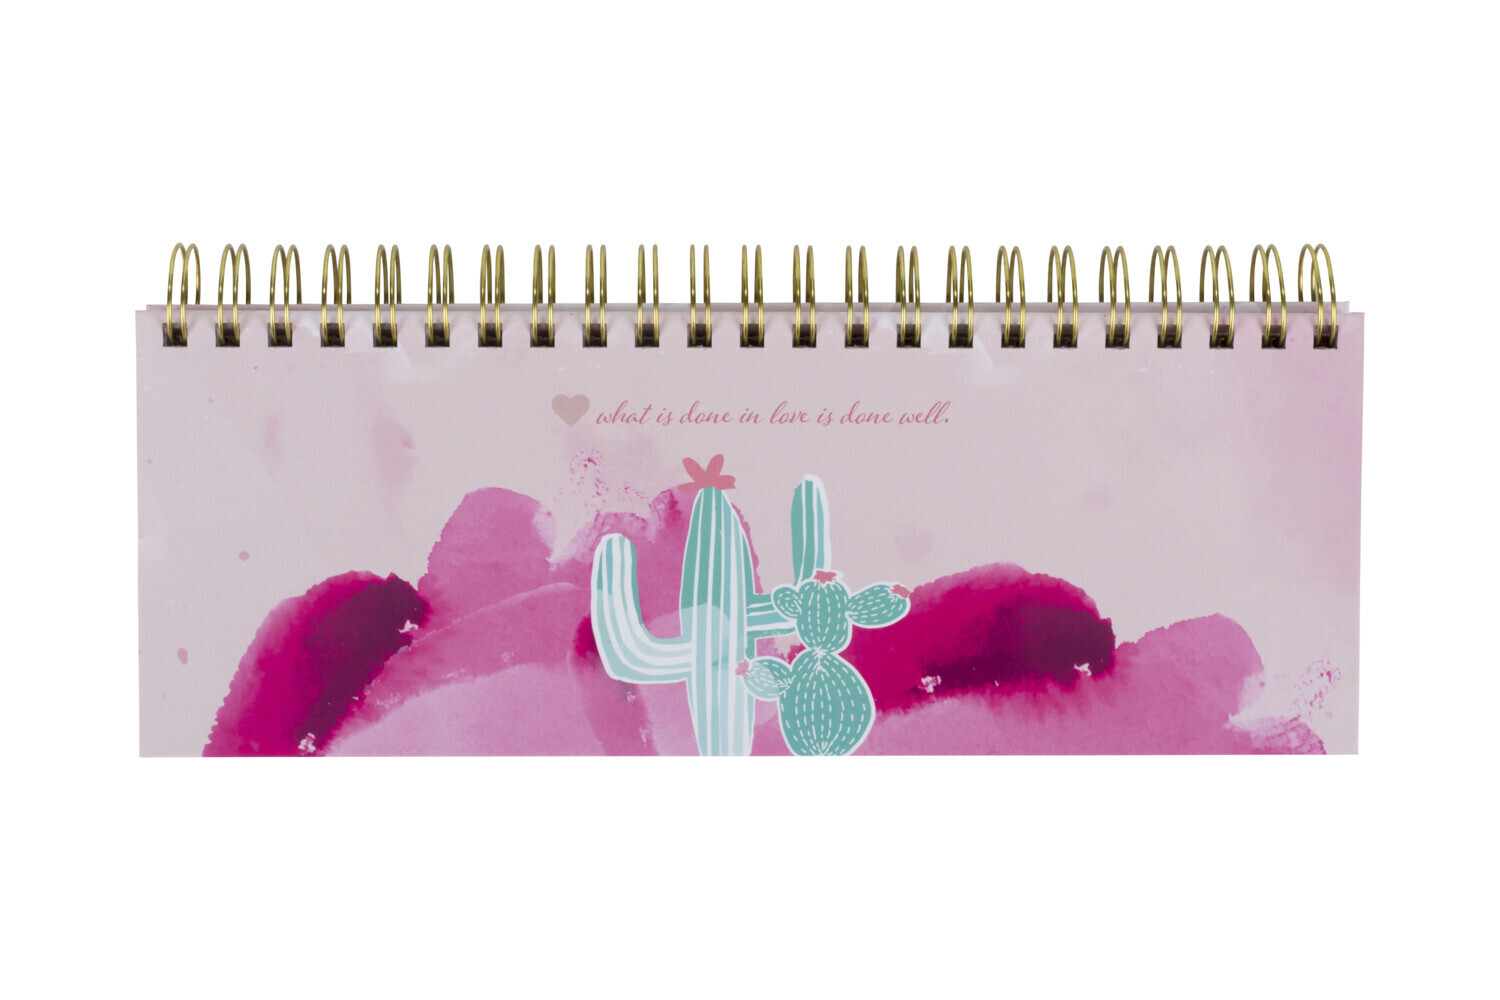 Rosa Tischkalender ohne Datum Alpaka & Kaktus. Hochwertiger moderner Wochenkalender Querkalender für 52 Wochen +1. 1 Woche 2 Seiten. Verwendbar als Kalender 2022